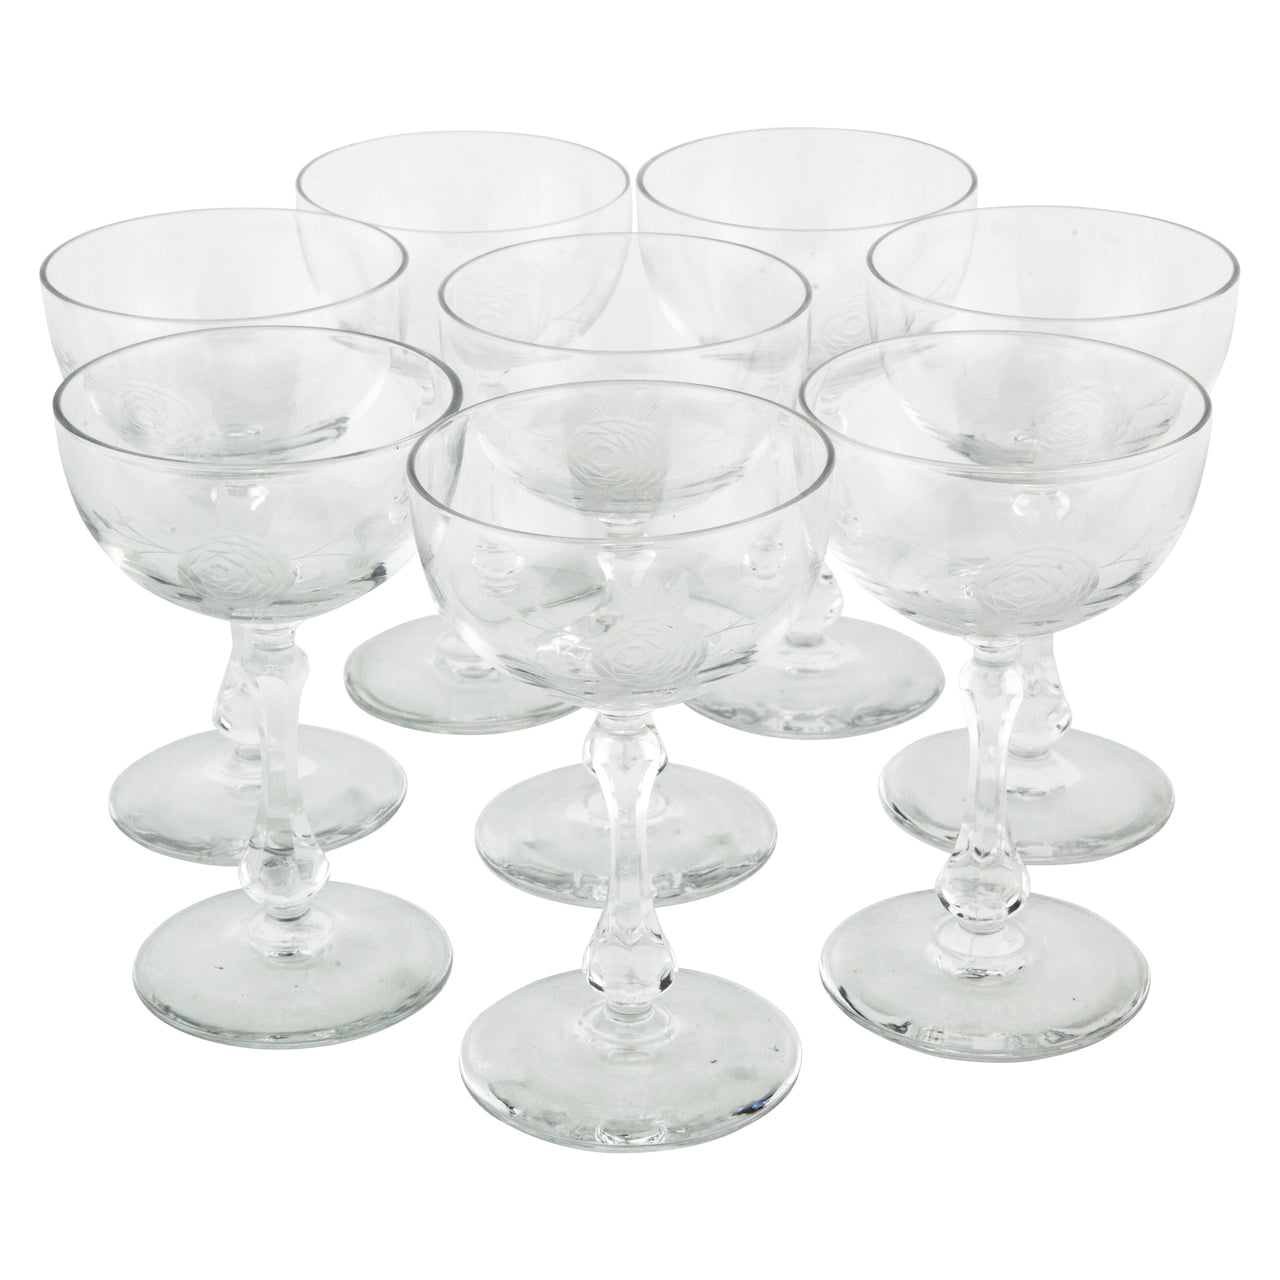 https://thehourshop.com/cdn/shop/products/16322.Vintage-Etched-Rose-Cocktail-Glasses_1280x1280.jpg?v=1567978104